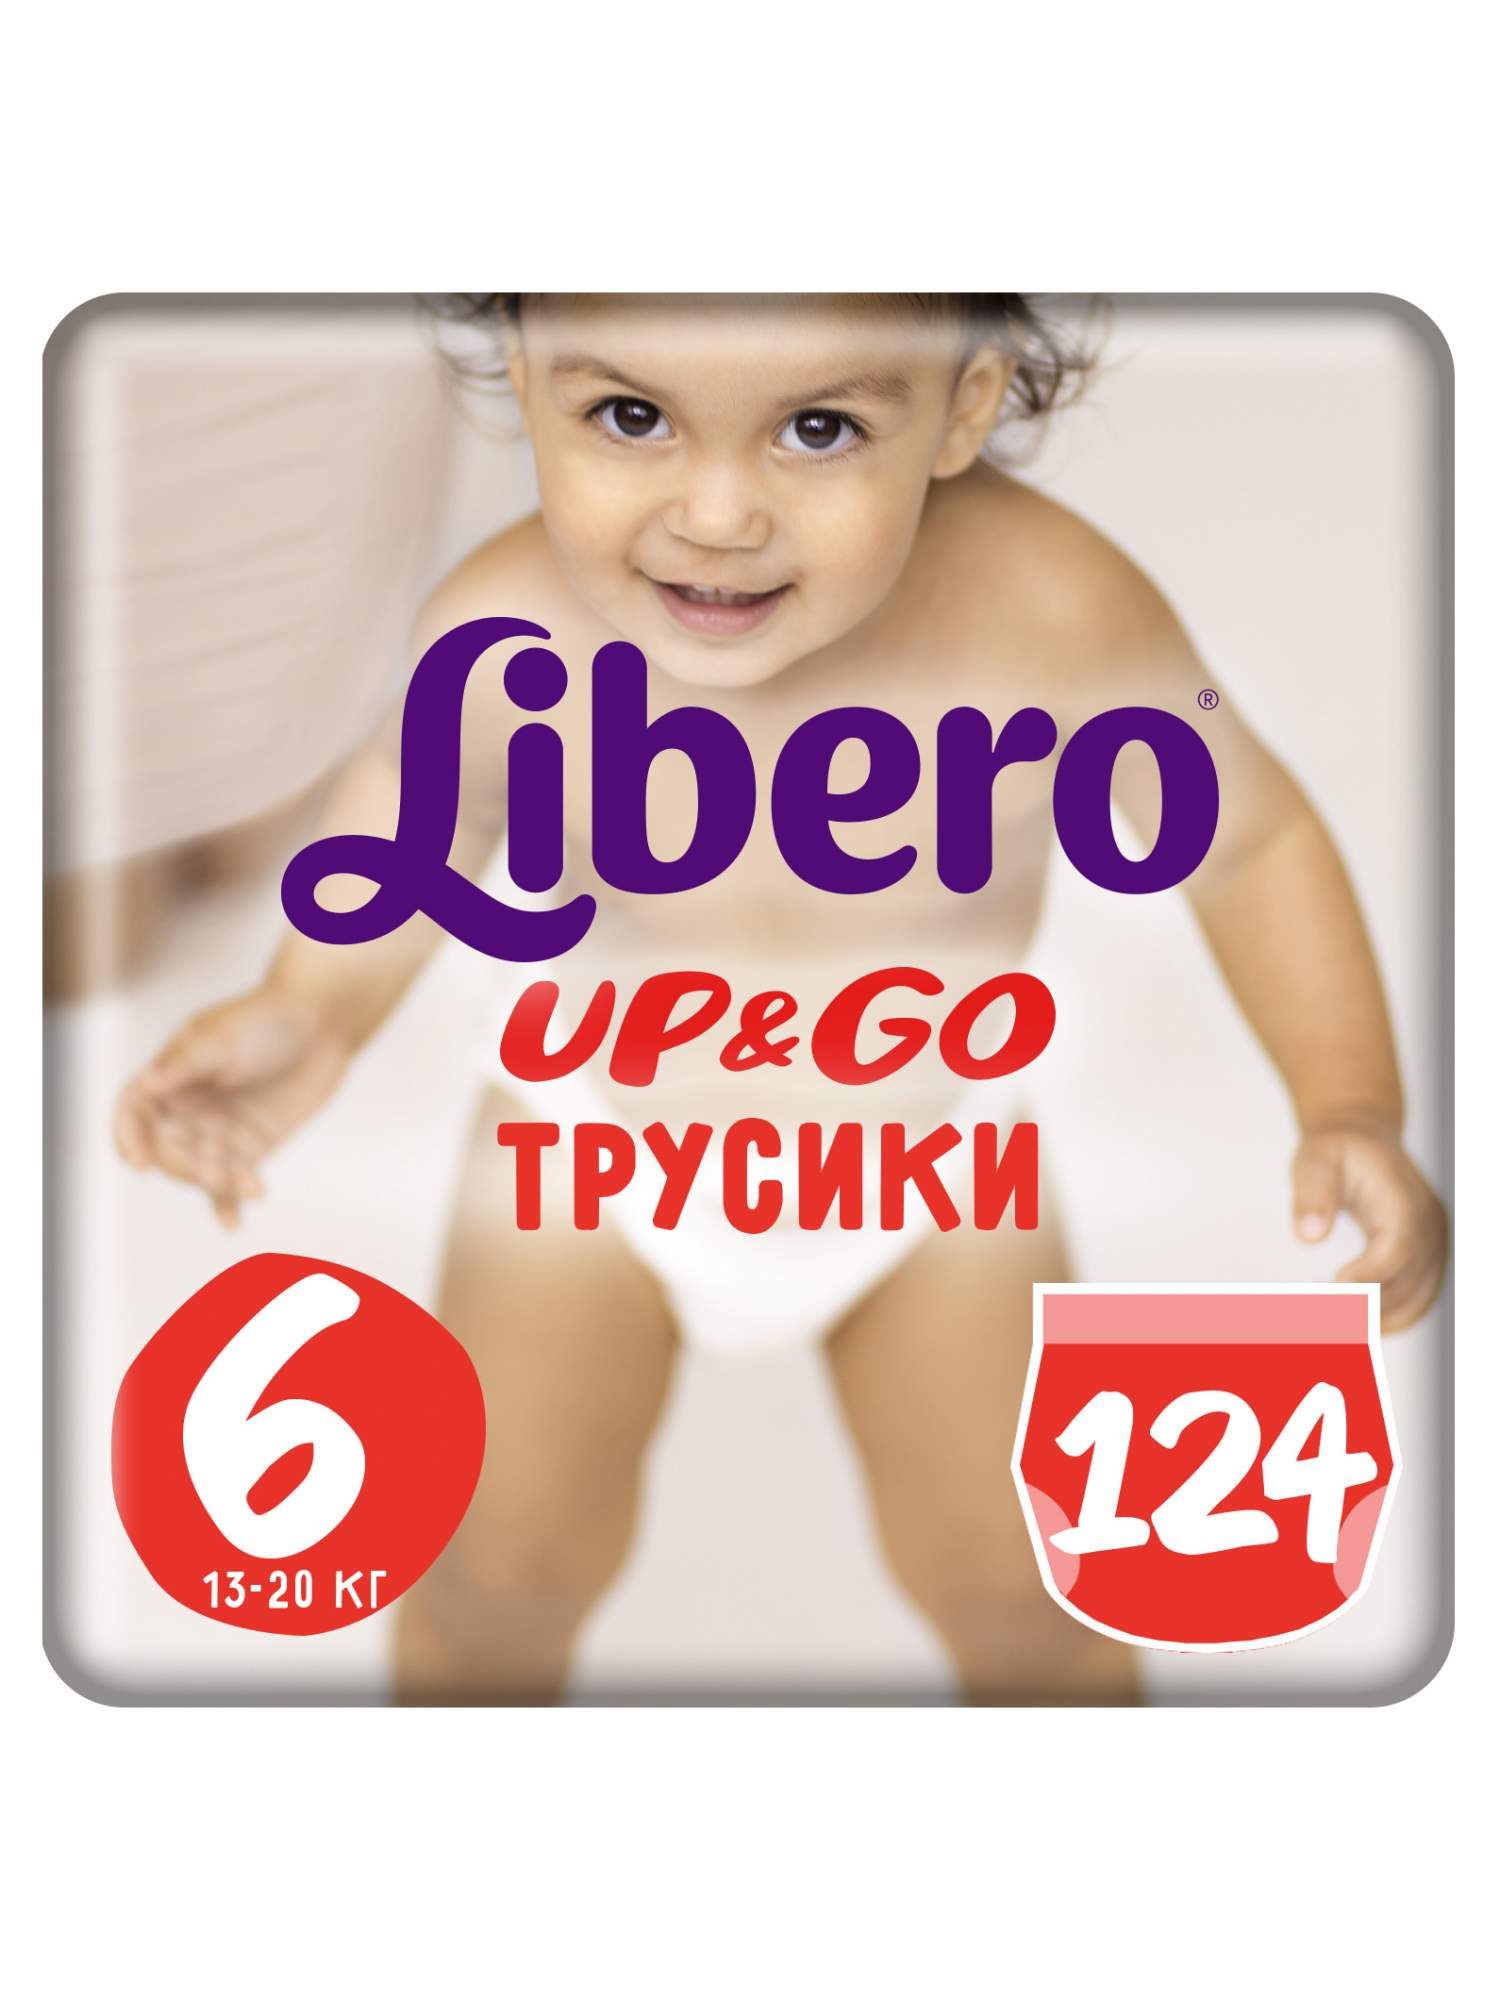 Трусики Libero Up & Go 6 (13-20 кг) - 124 шт (2 х 62 шт)